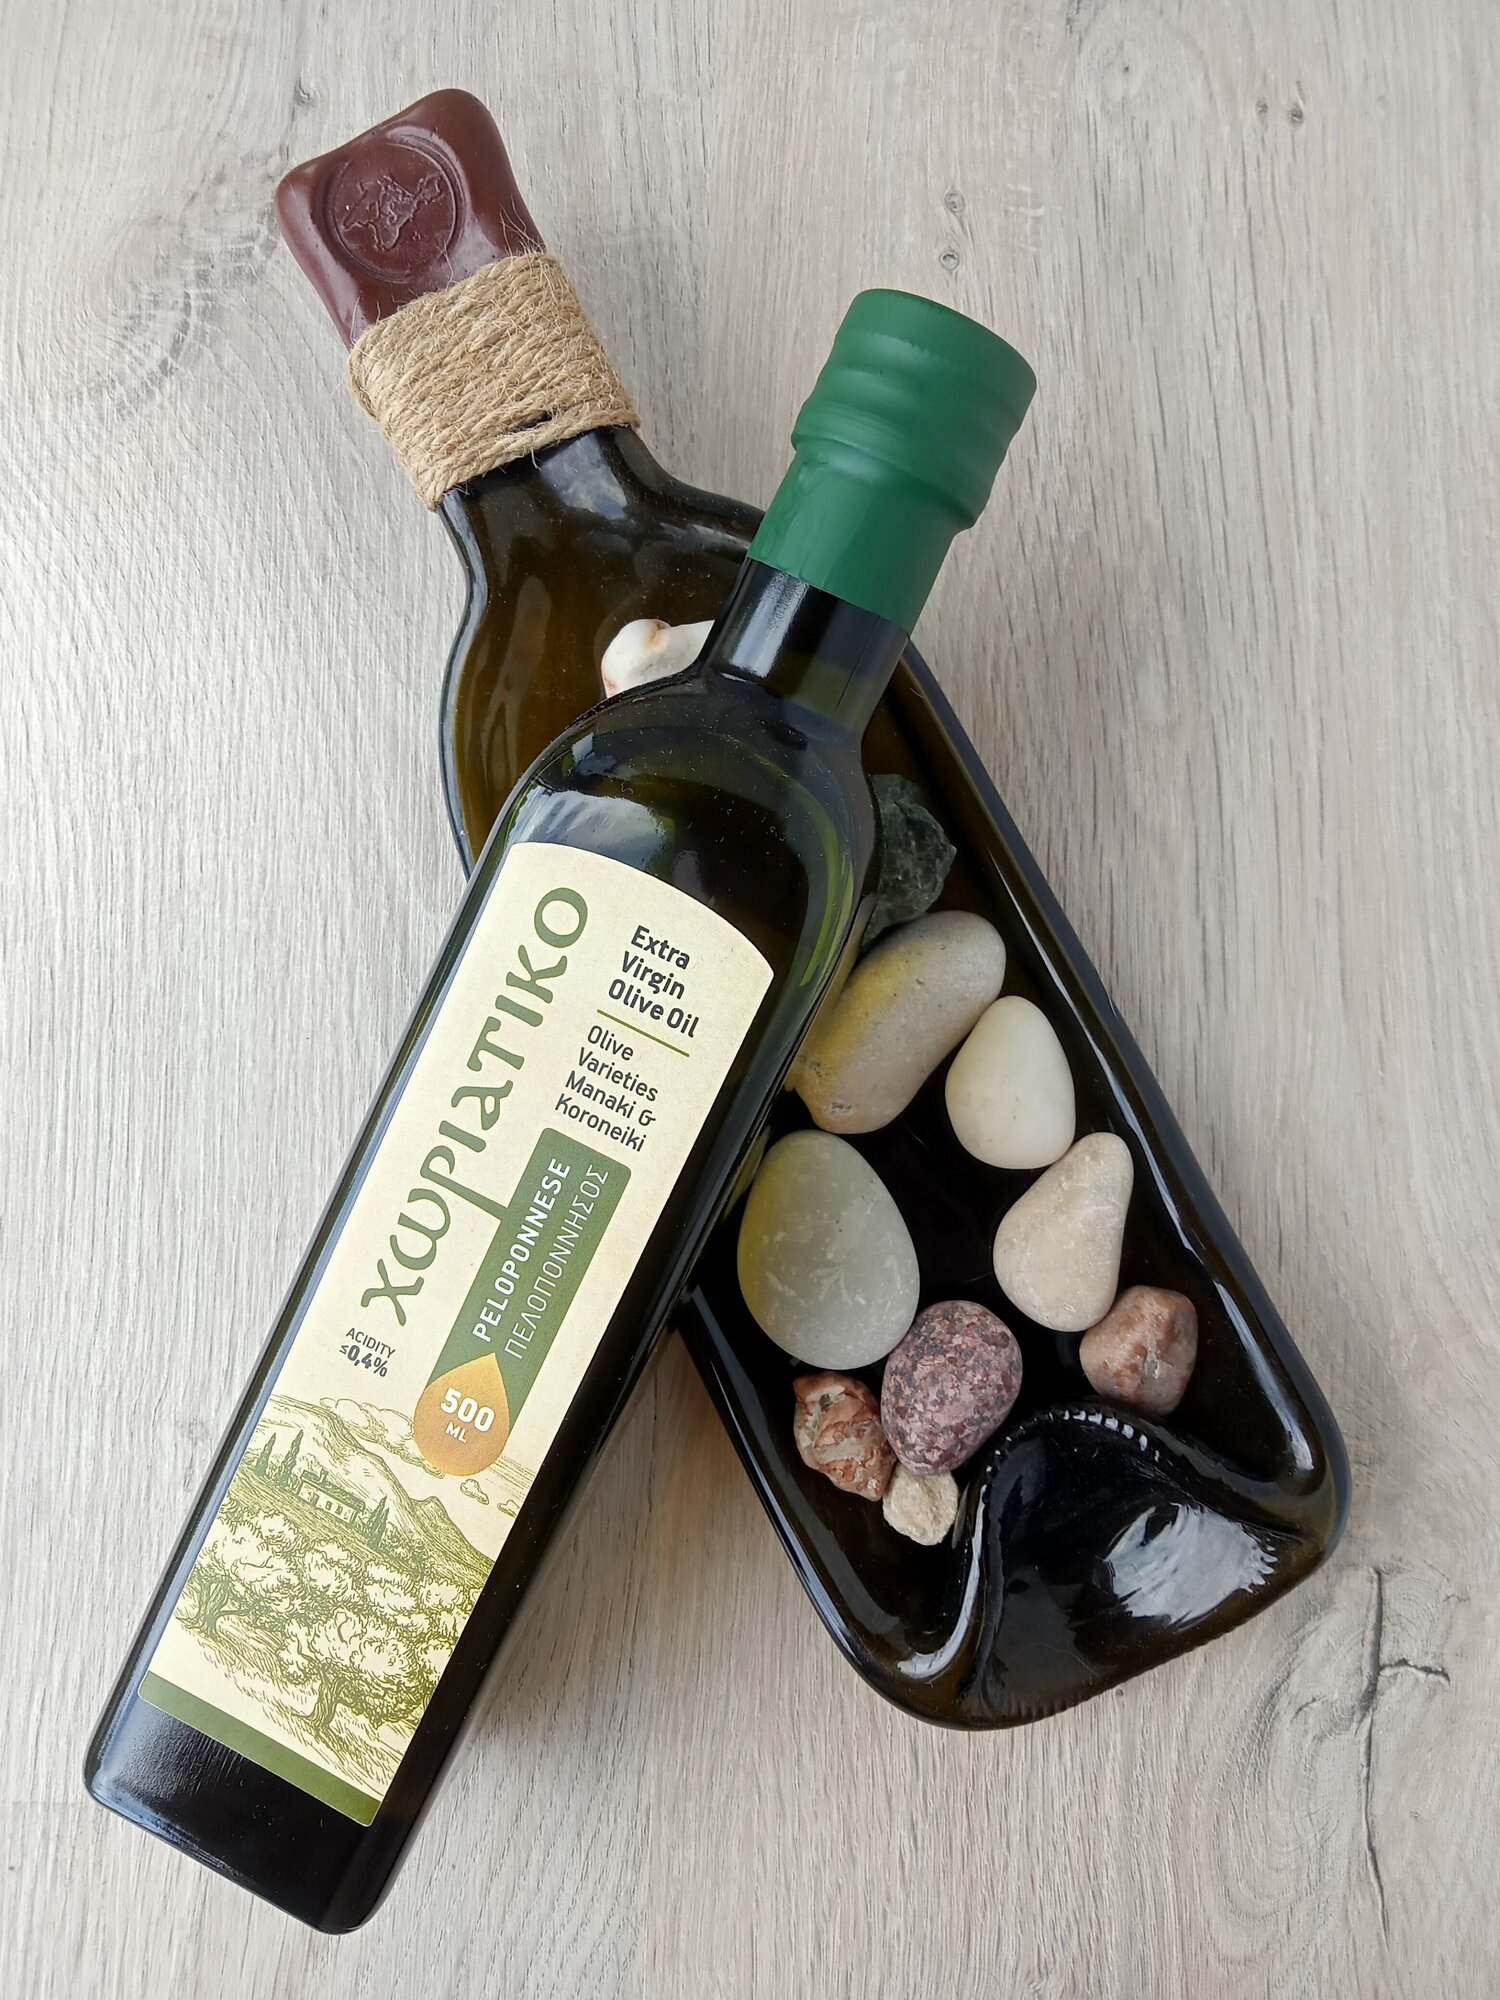 Деревенское Extra Virgin оливковое масло Horiatiko Peloponnese (Хориатико Пелопоннес), 500 мл